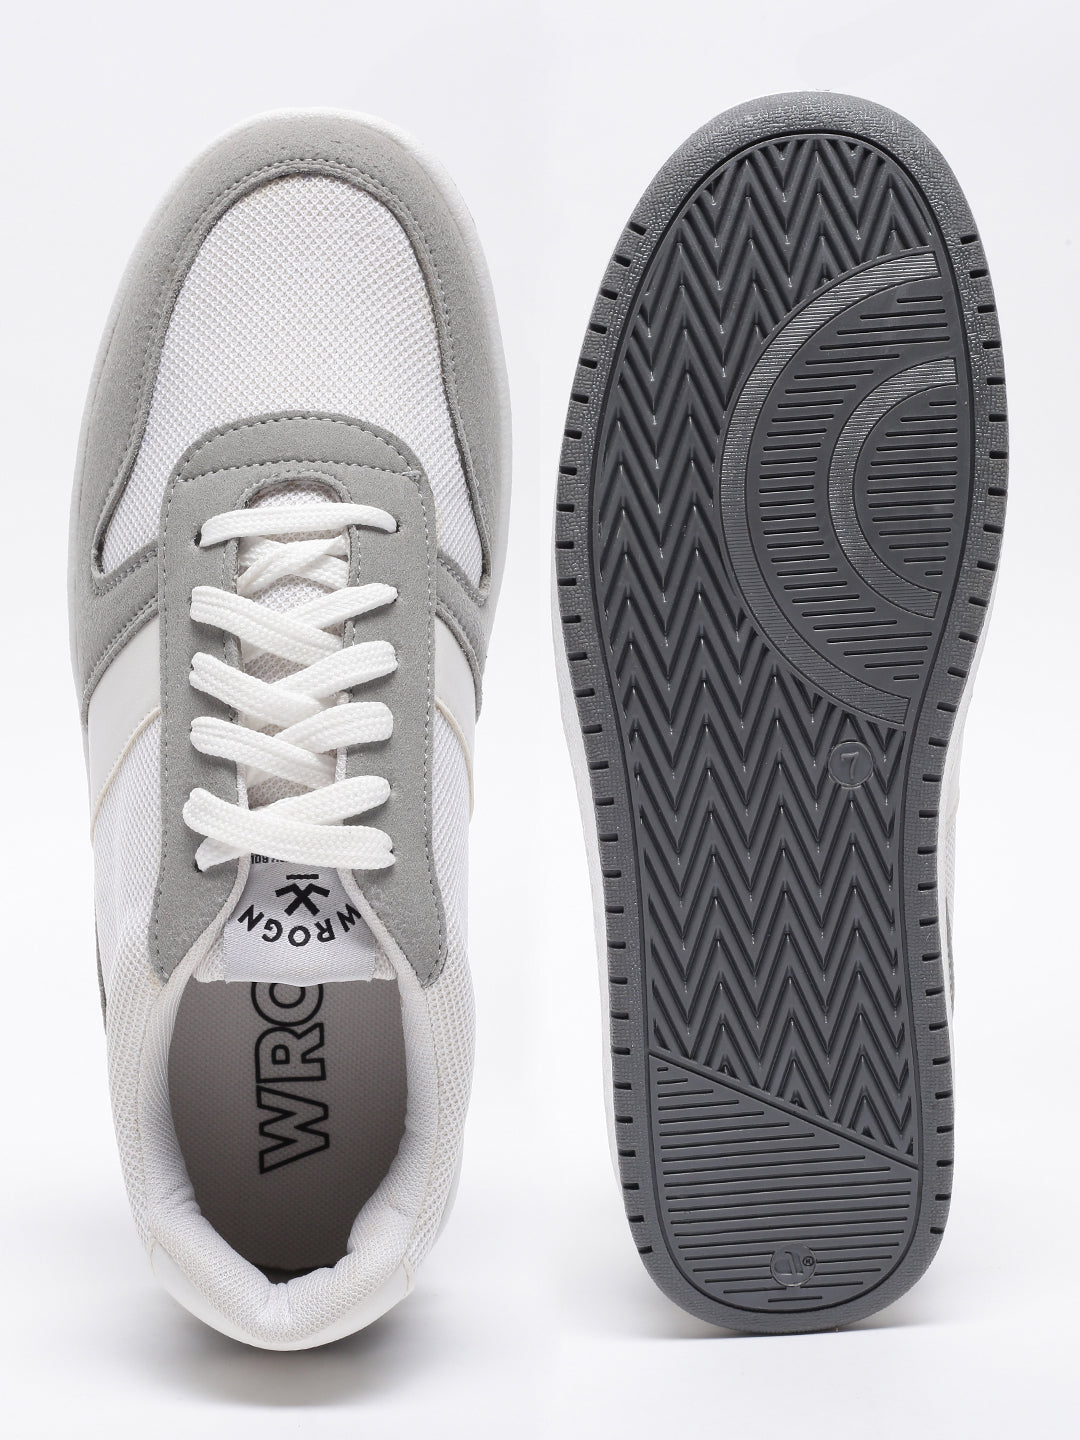 White & Grey Urban Sneakers